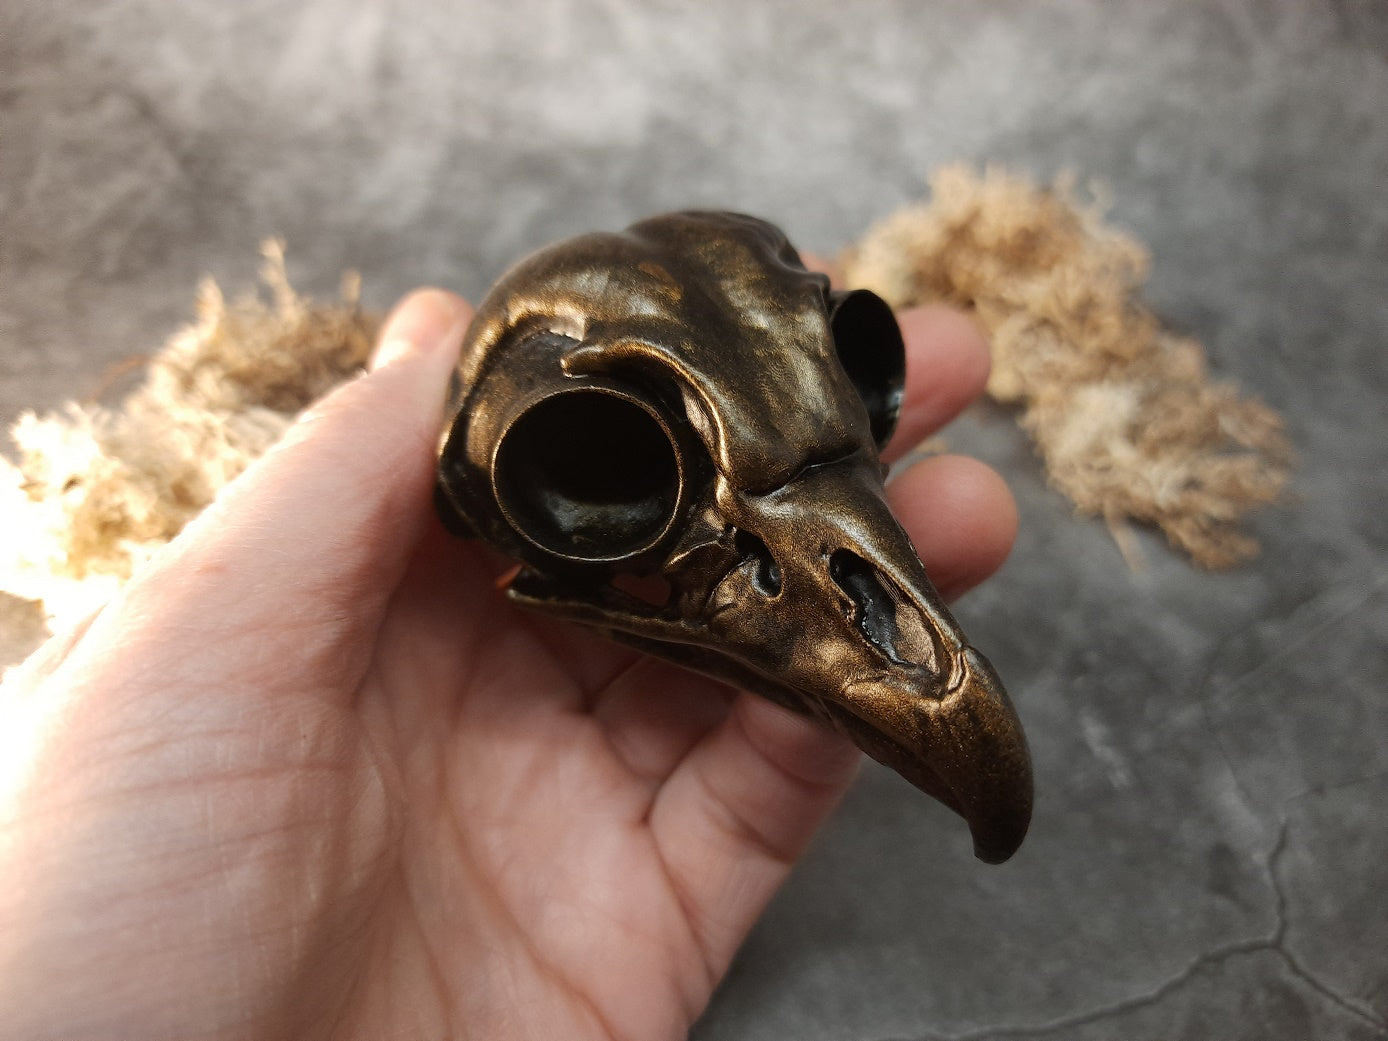 Owl skull replica gold bronze color